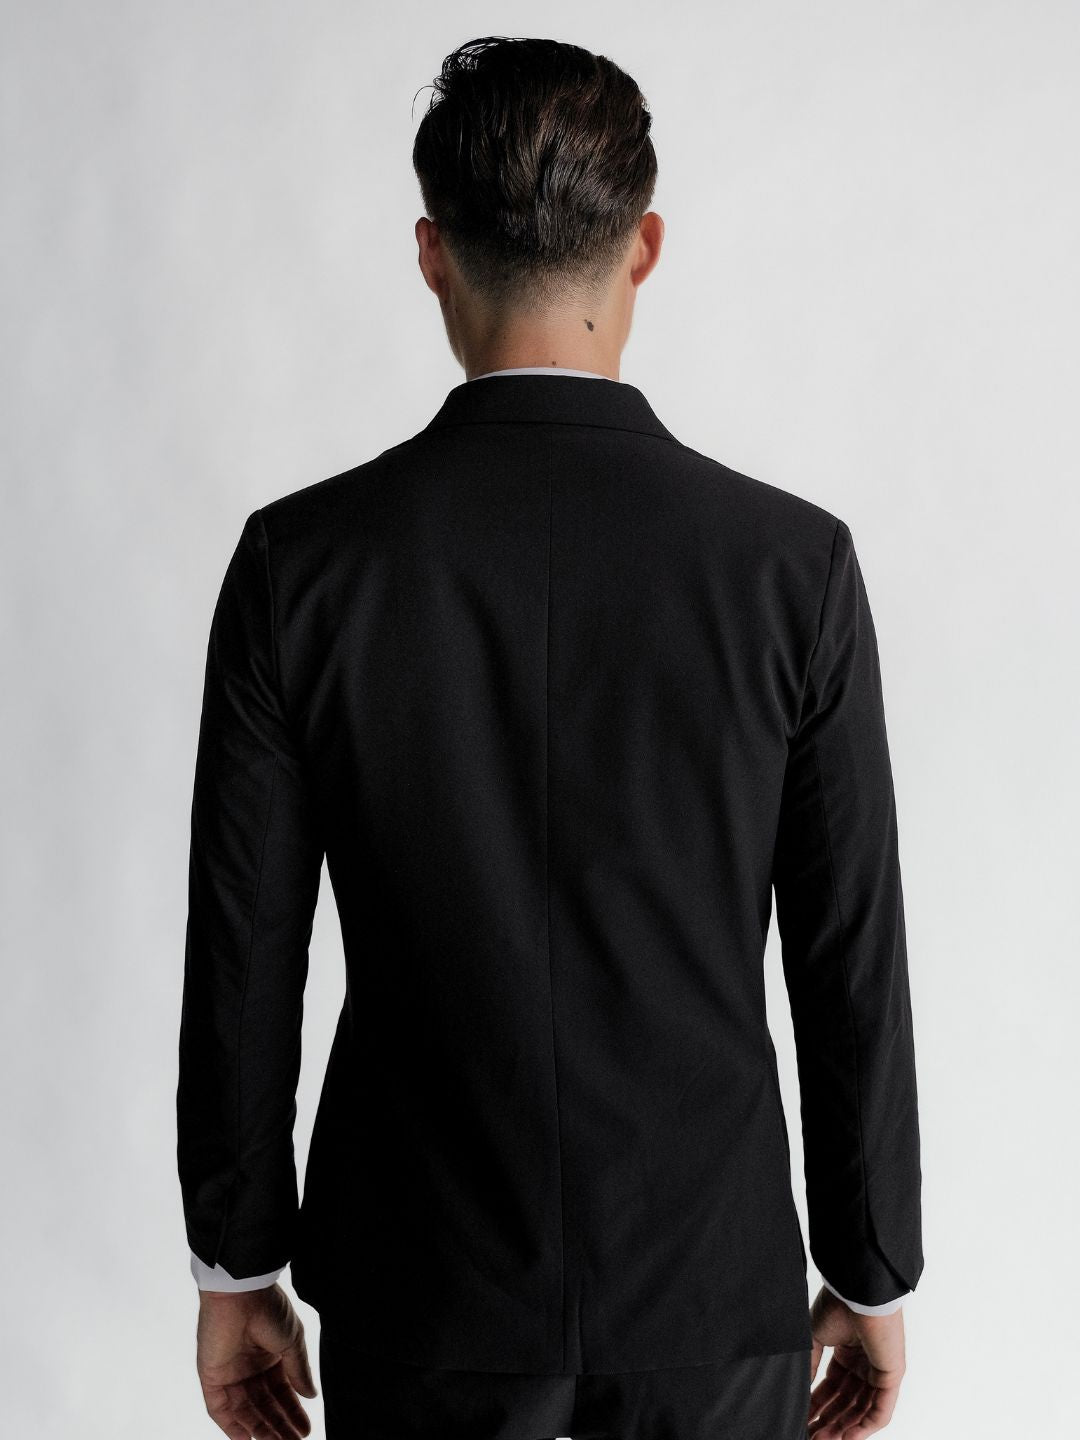 Ultra Suit 3.0 單排扣外套 經典黑 - TRANZEND